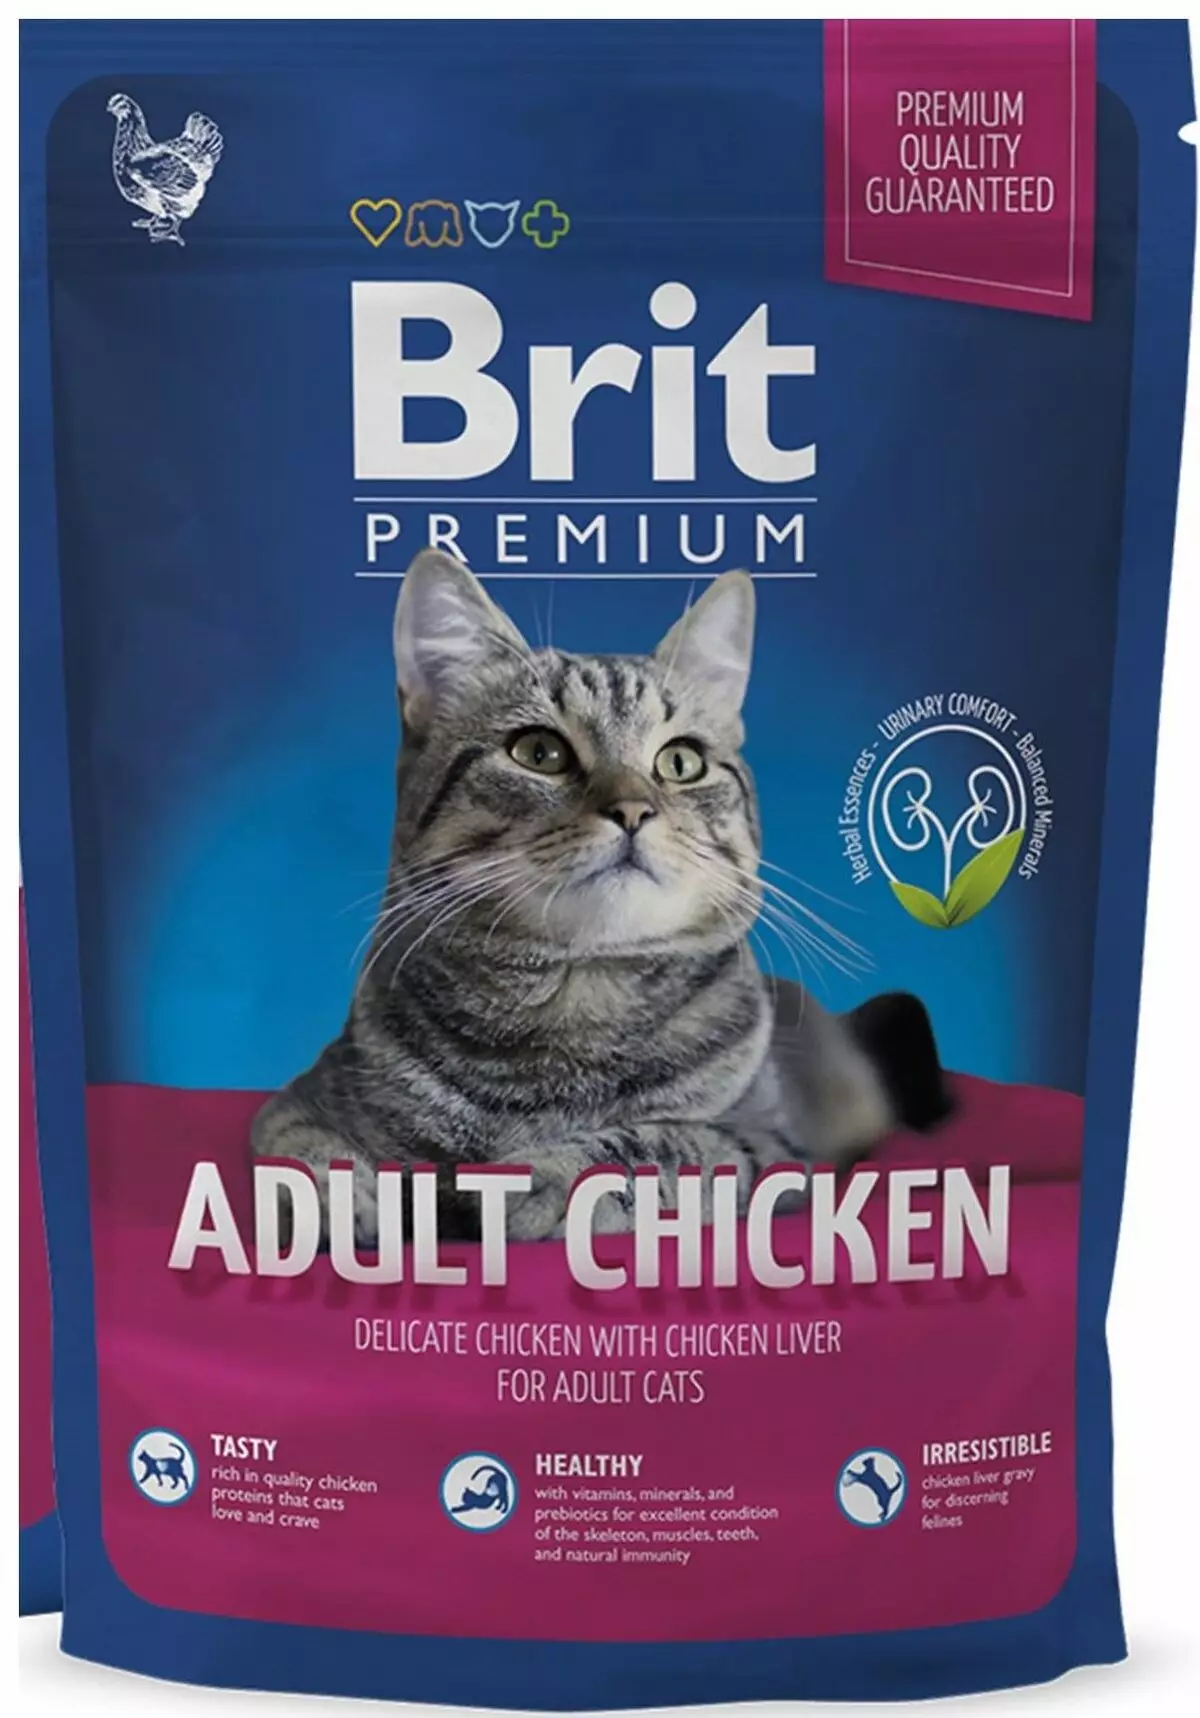 Υγρή τροφοδοσία για τις γάτες Premium: βαθμολογία της καλύτερης υγρής τροφοδοσίας για τα γατάκια, καλό μαλακό φαγητό αιλουροειδών 11830_43